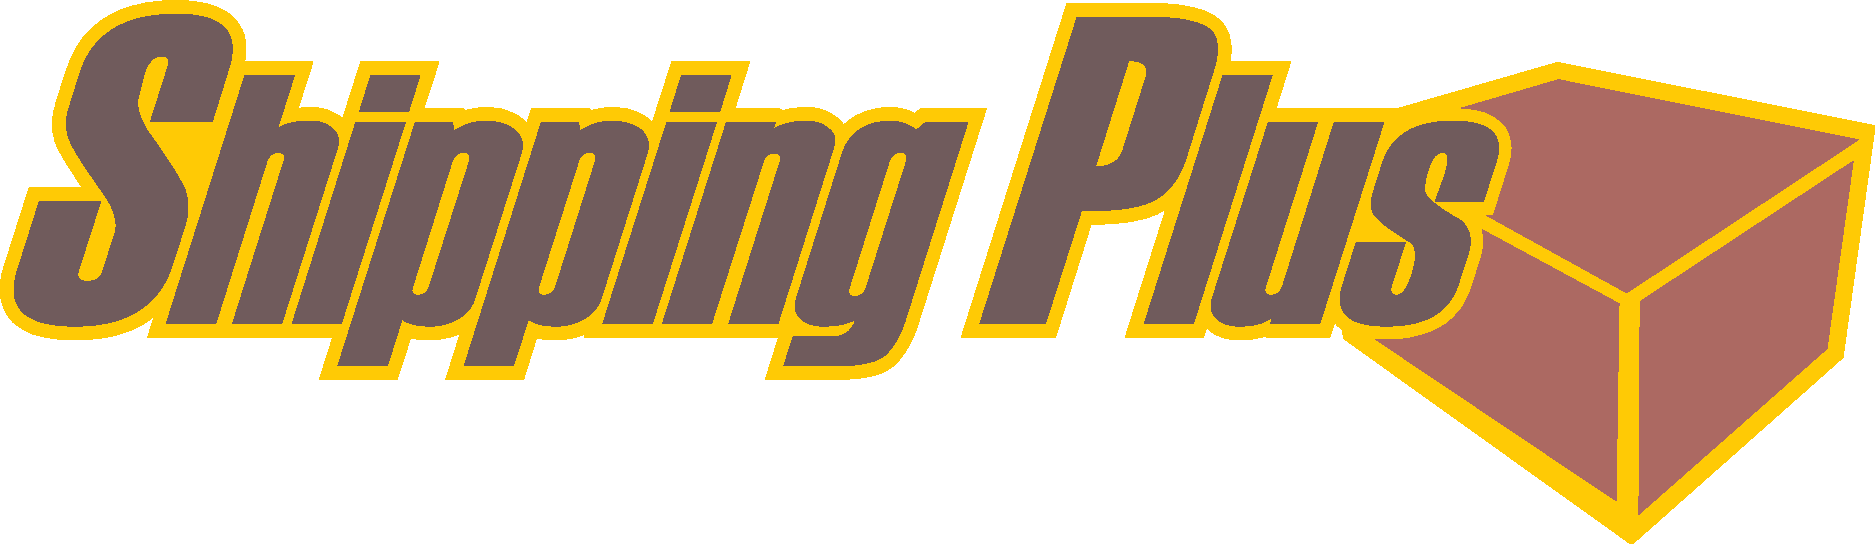 Shipping Plus Logo Vector